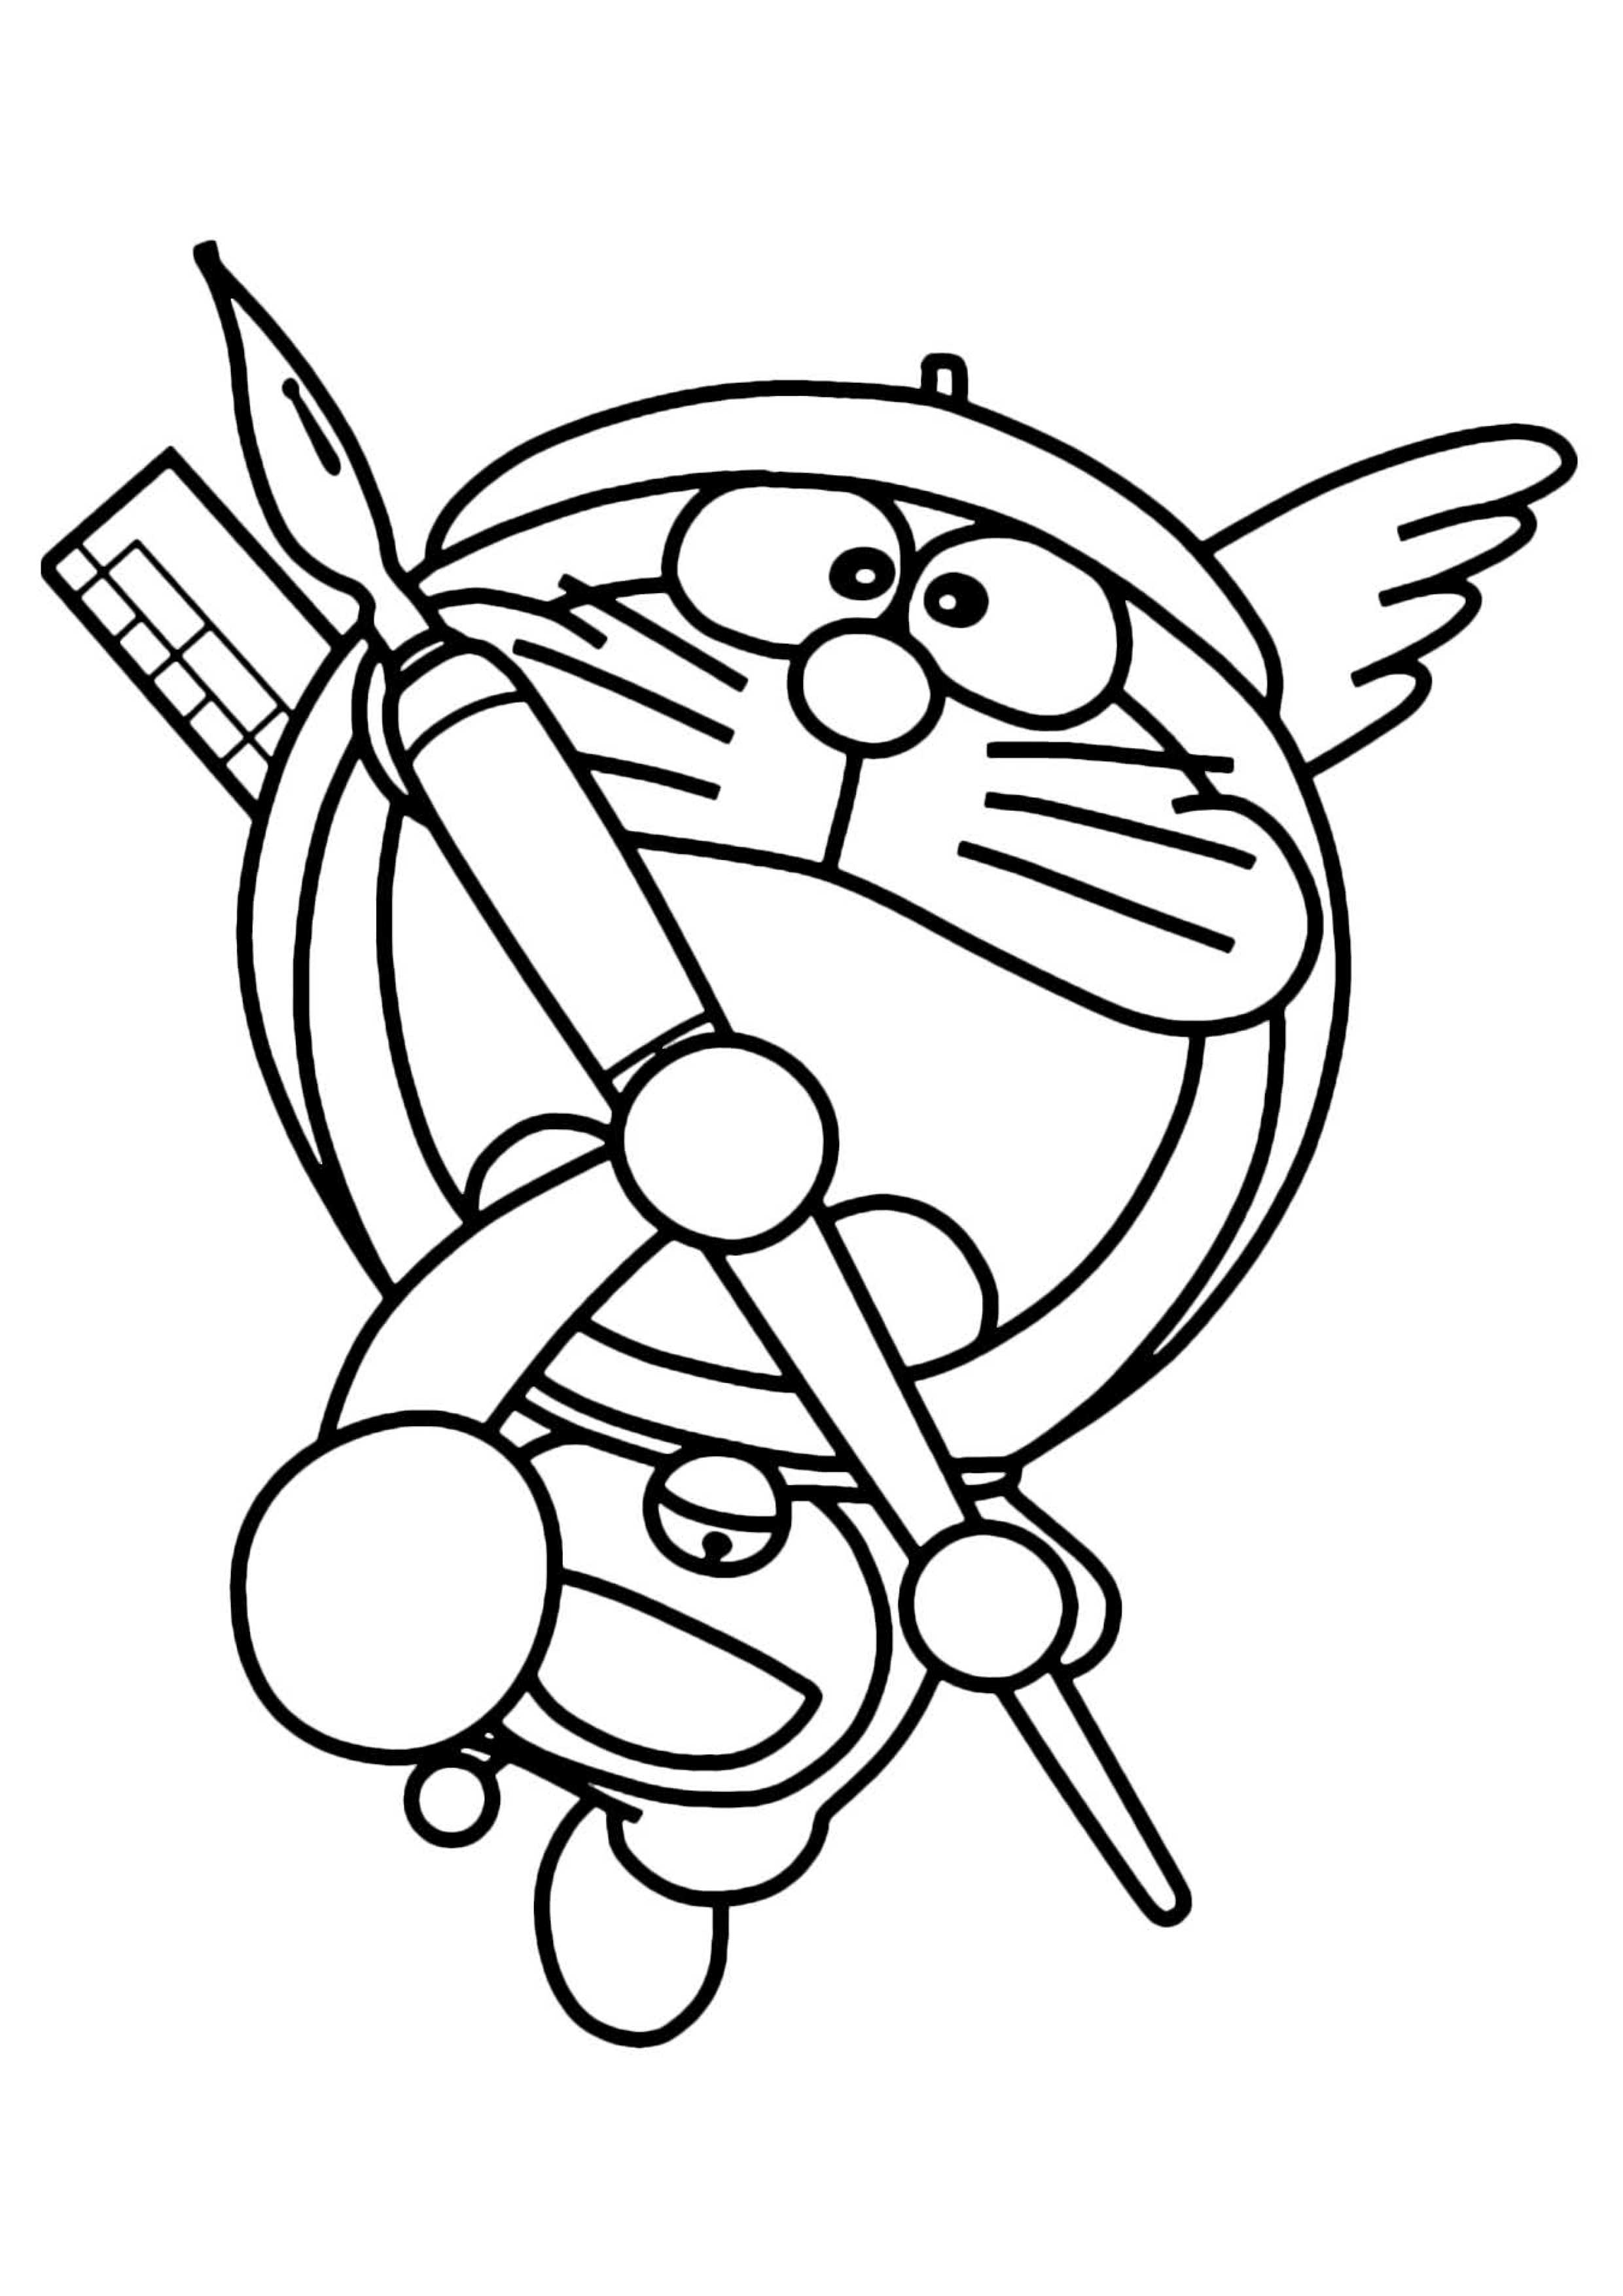 28 Disegni di Doraemon da Colorare   PianetaBambini.it